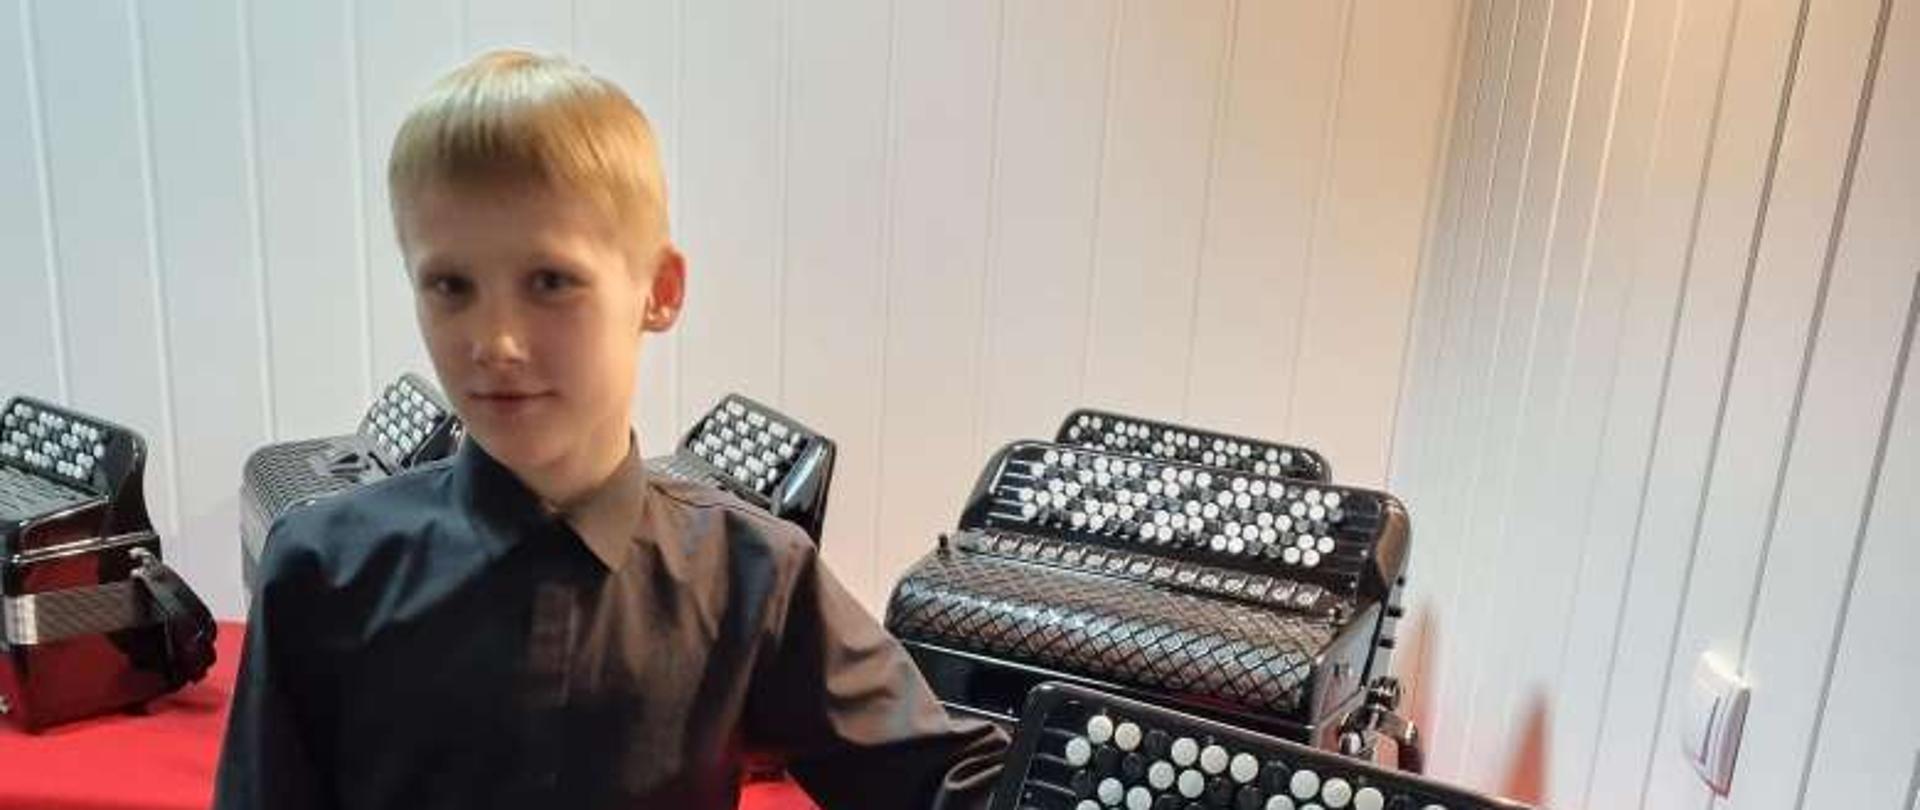 Chłopiec w czarnej koszuli, w tle wystawa akordeonów